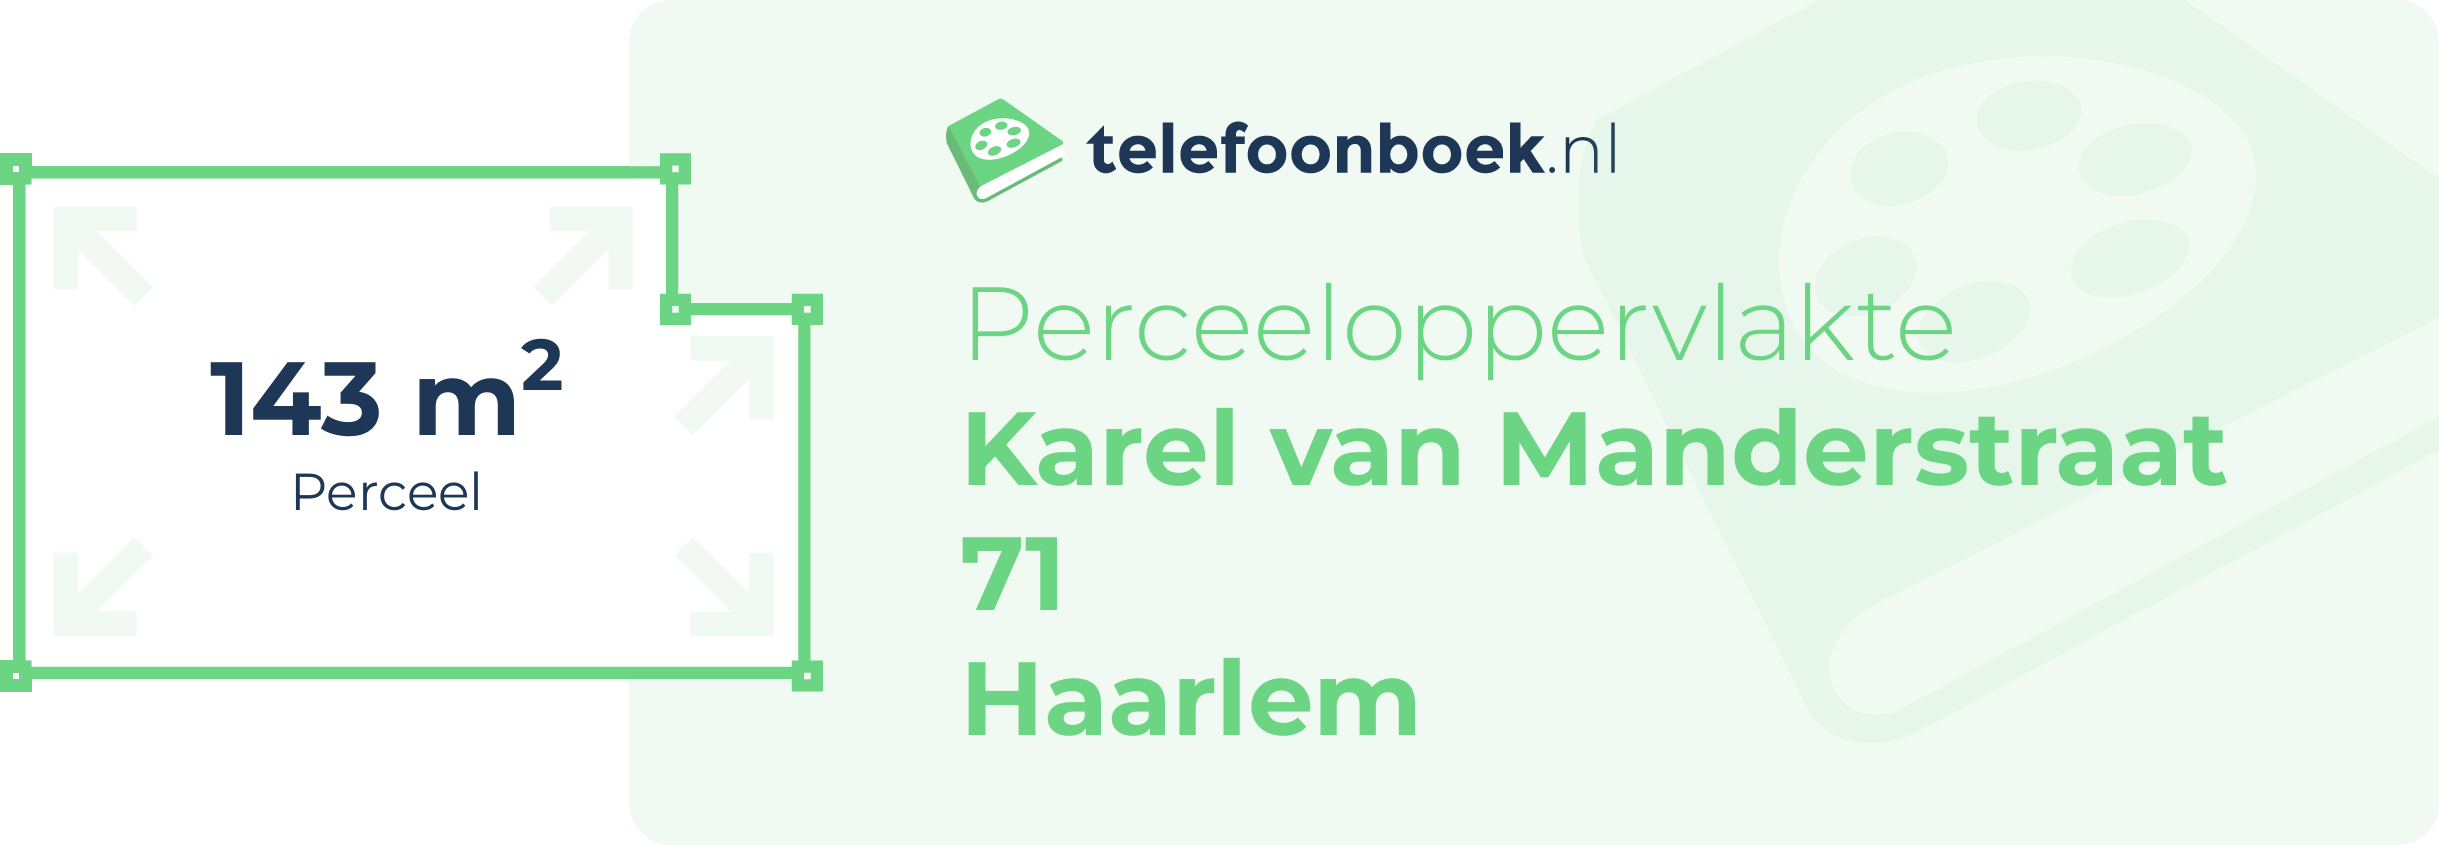 Perceeloppervlakte Karel Van Manderstraat 71 Haarlem